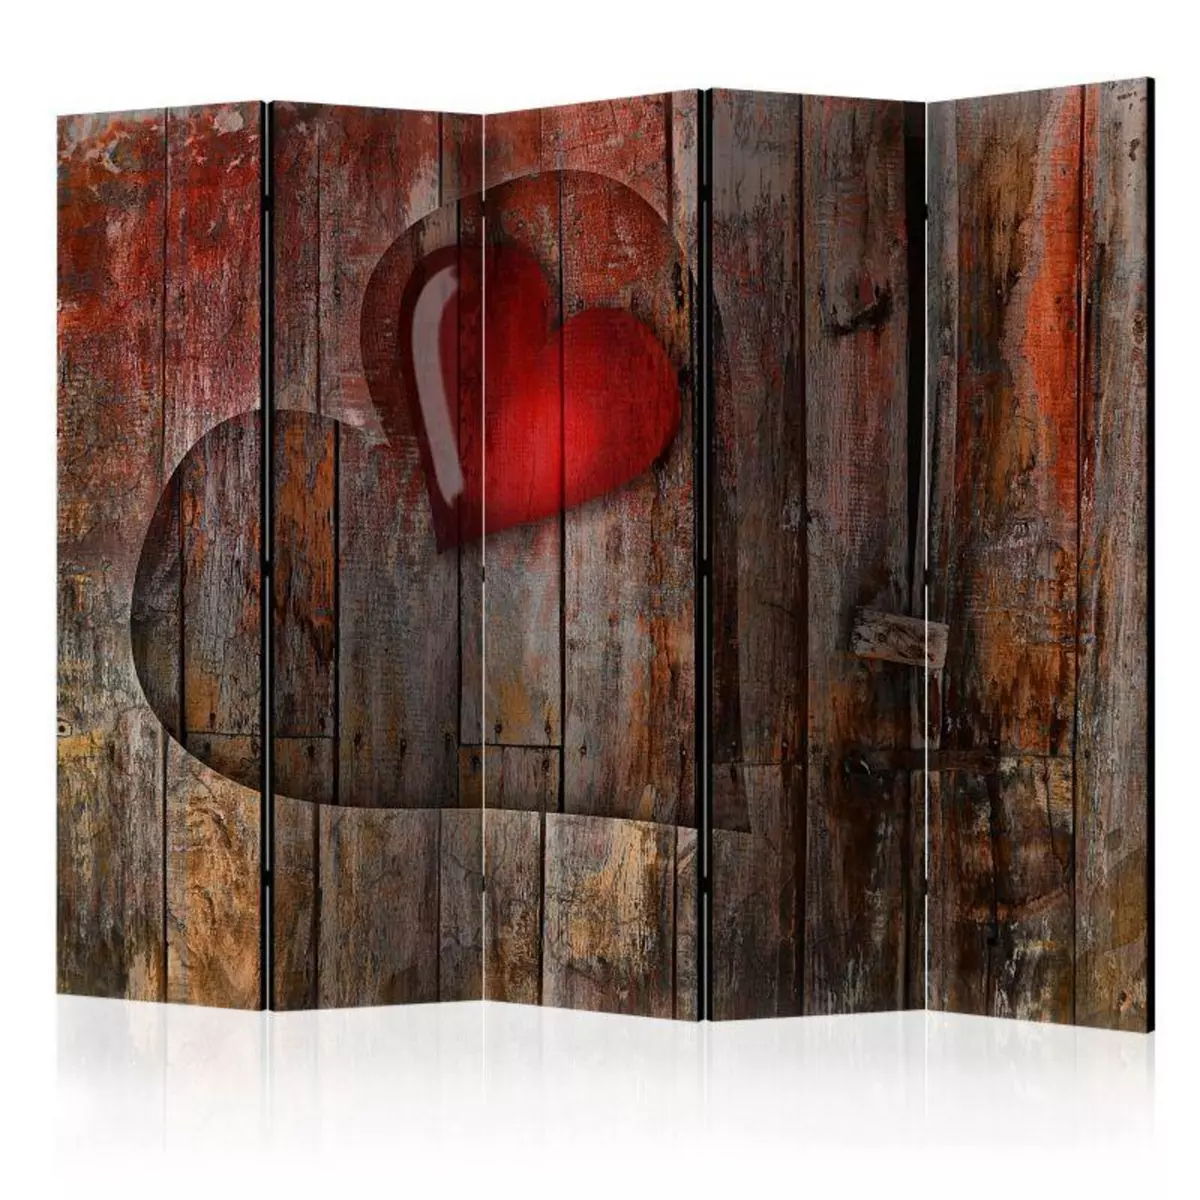 Paris Prix Paravent 5 Volets  Heart on Wooden Background  172x225cm